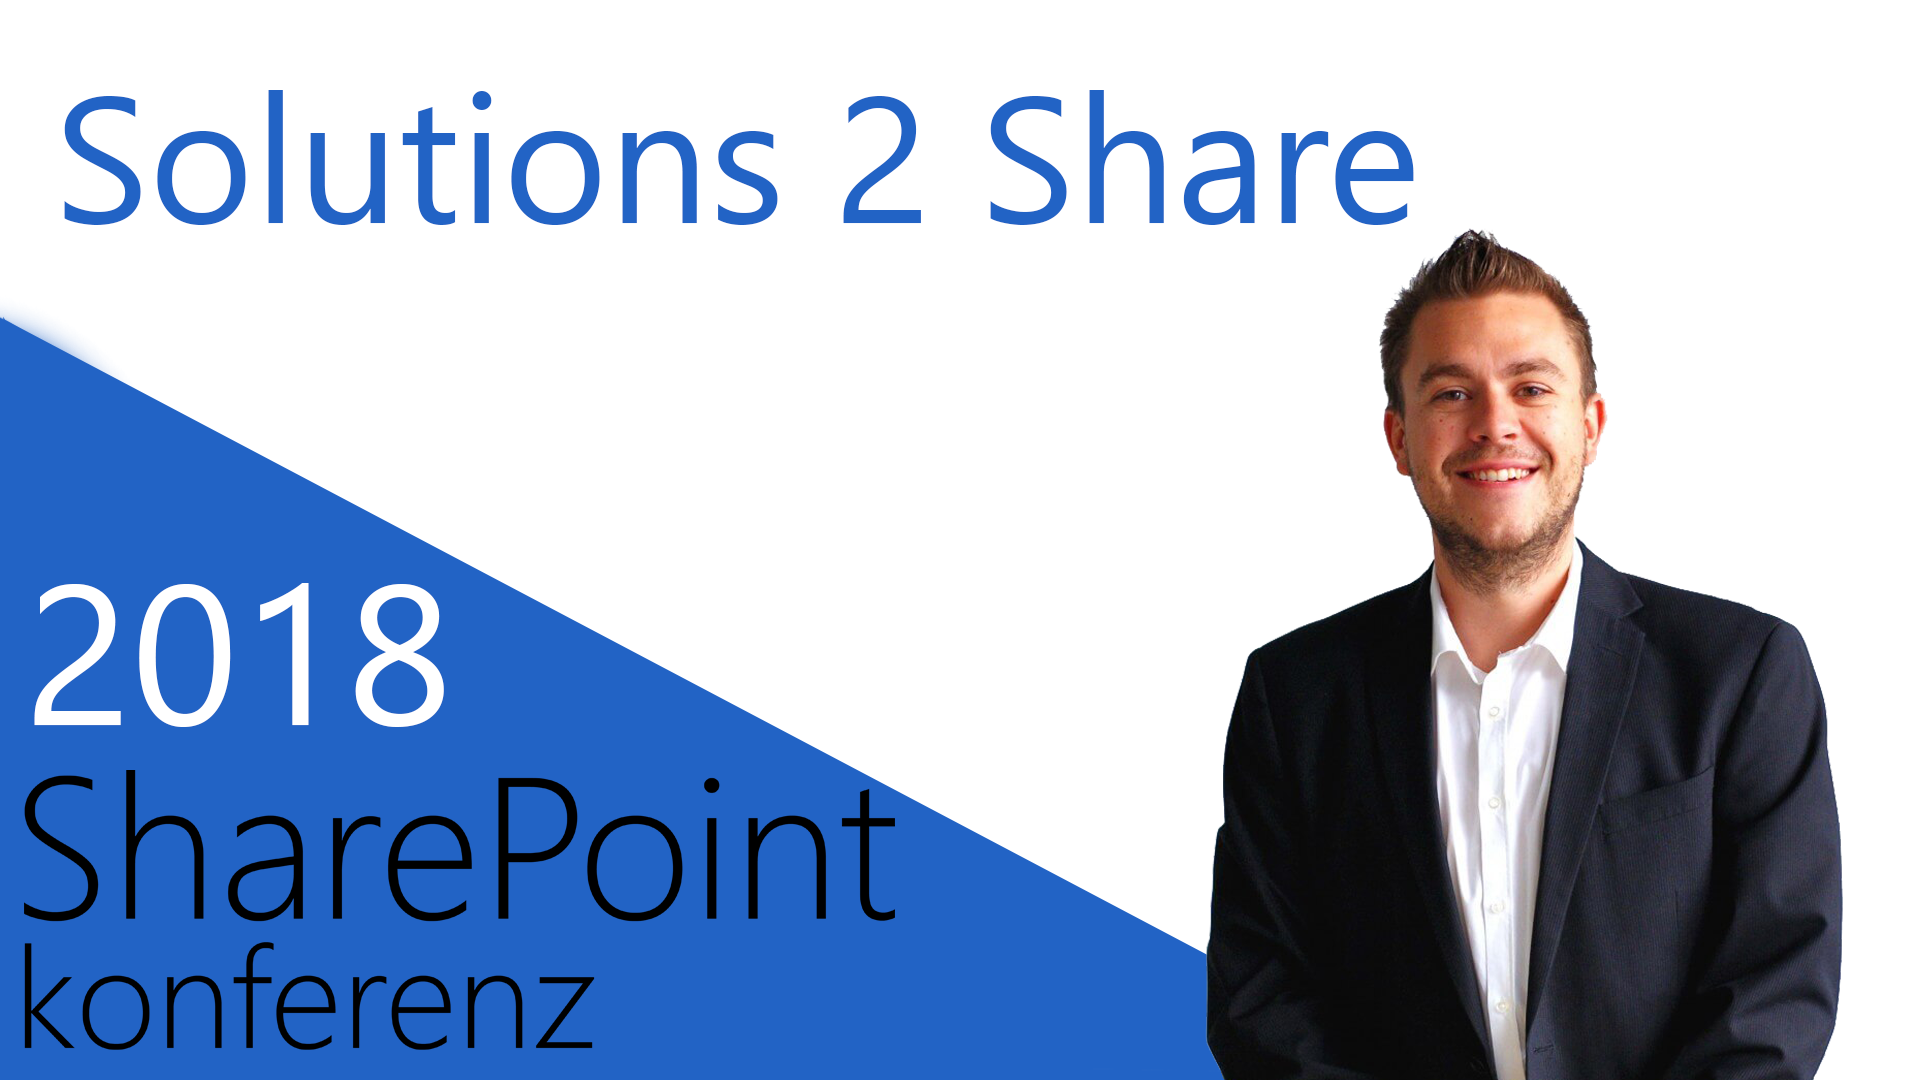 2018/SharePointKonferenz/solutions2share